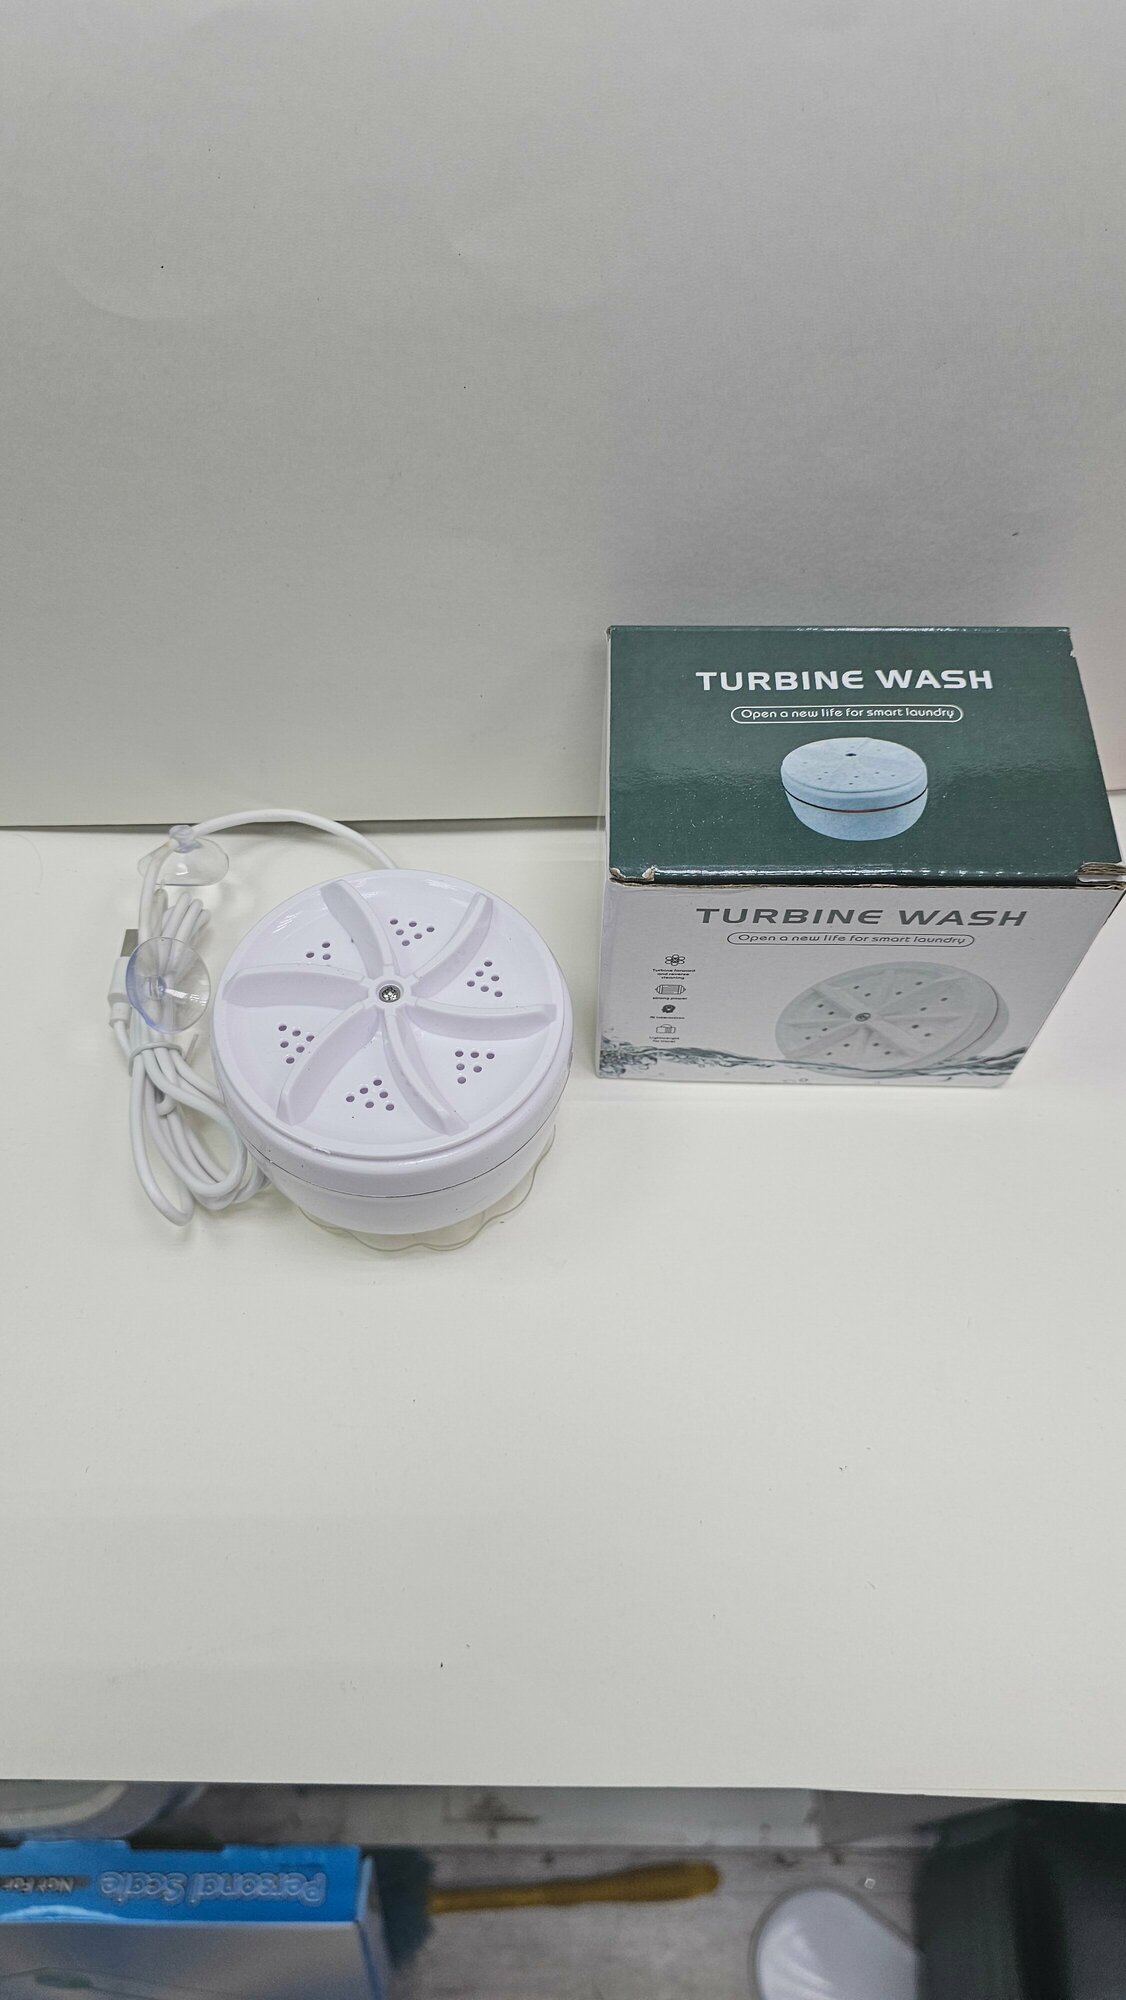 Ультразвуковая мини стиральная машинка Ultrasonic turbine wash (Белая)